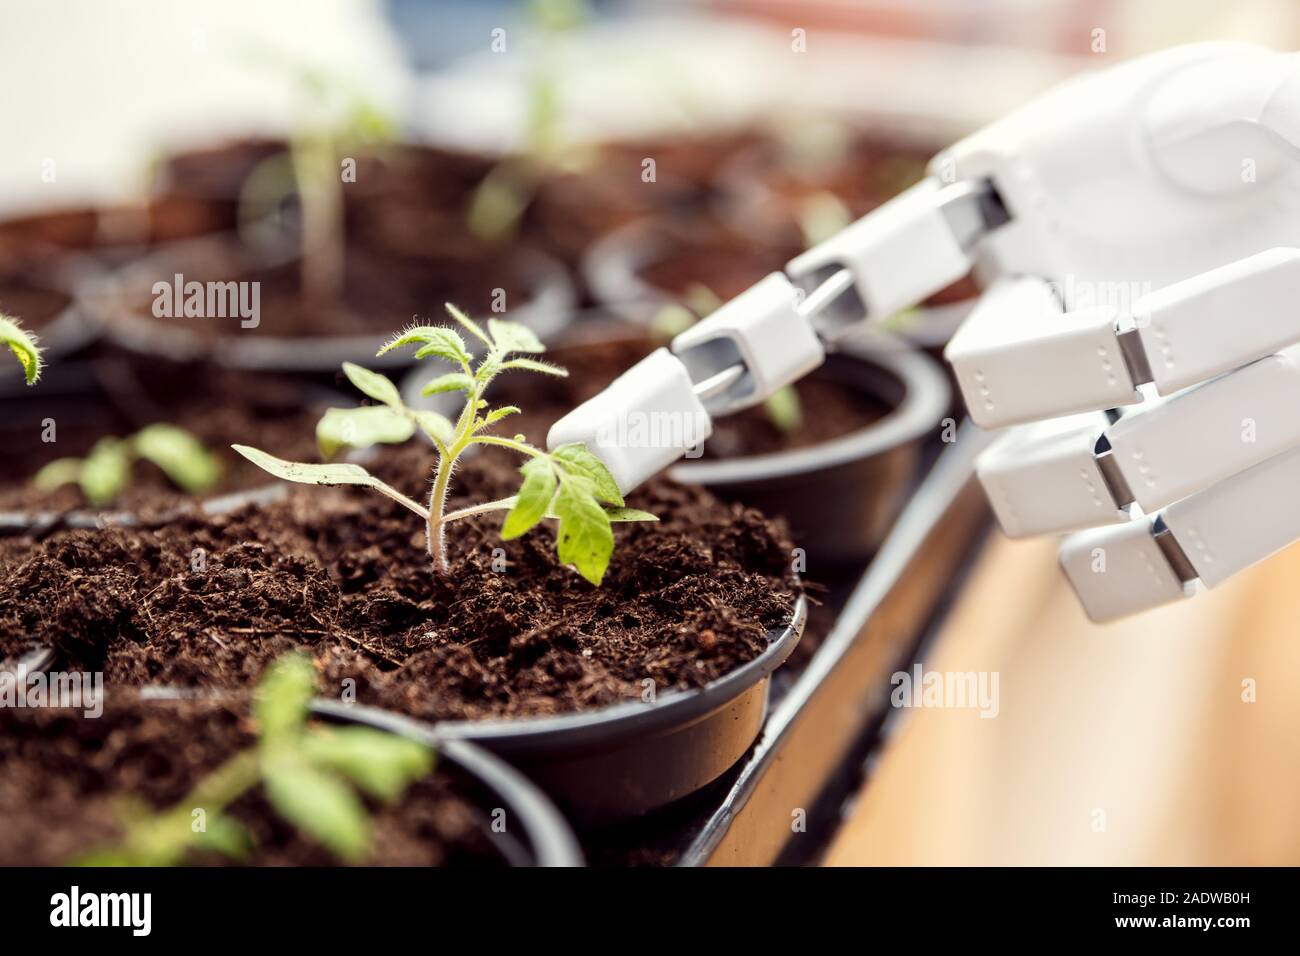 Robot autónomo es la jardinería de interiores, el robot jardinero con verduras en una habitación, Cyborg está intentando comprender la vida Foto de stock